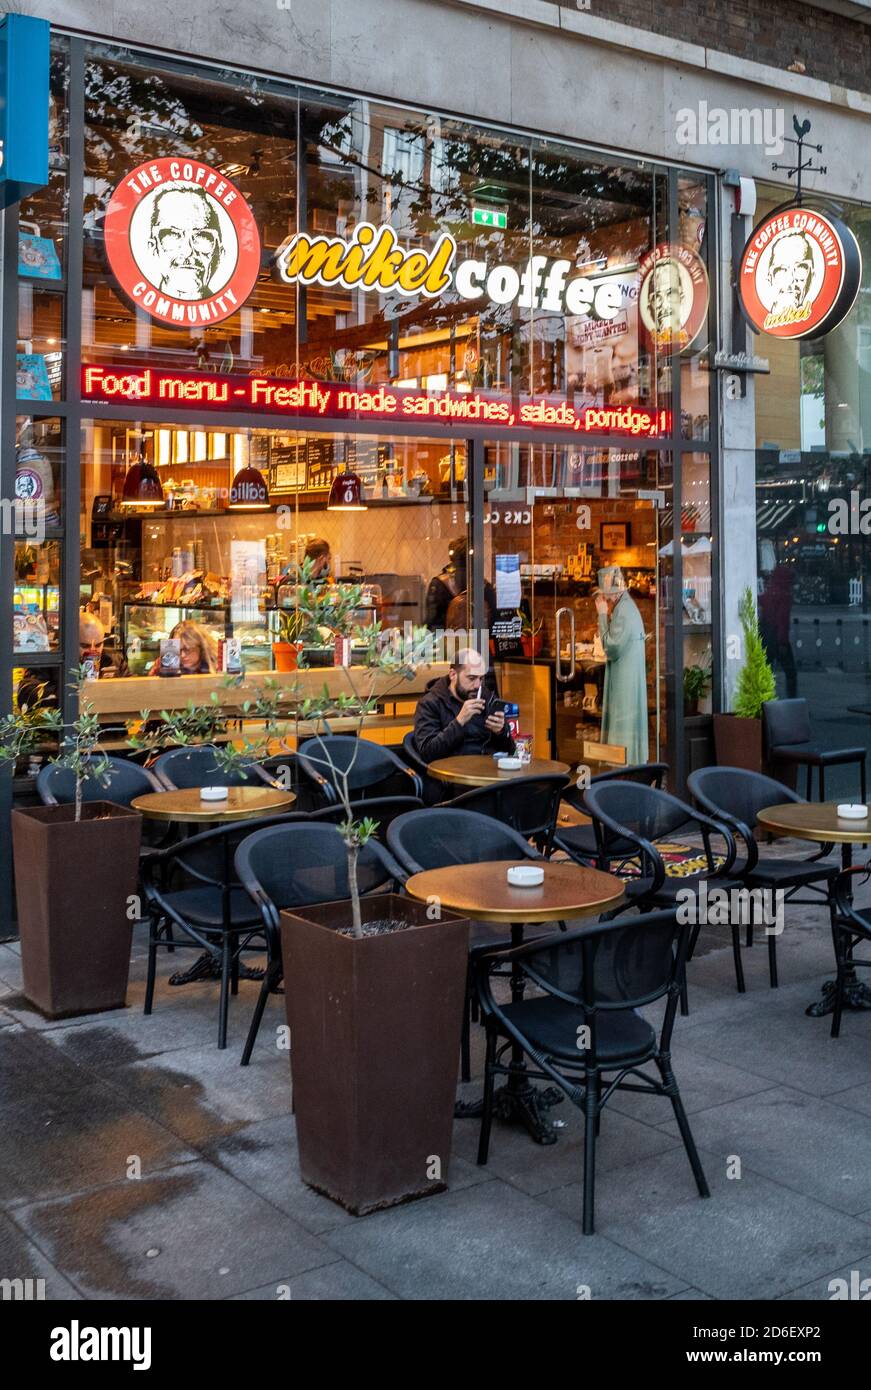 Mikel Coffee Shop London - Mikel Coffee Company è una catena di caffetterie con base greca con circa 250 negozi in tutto il mondo. Casa di caffè Mikel, Foto Stock